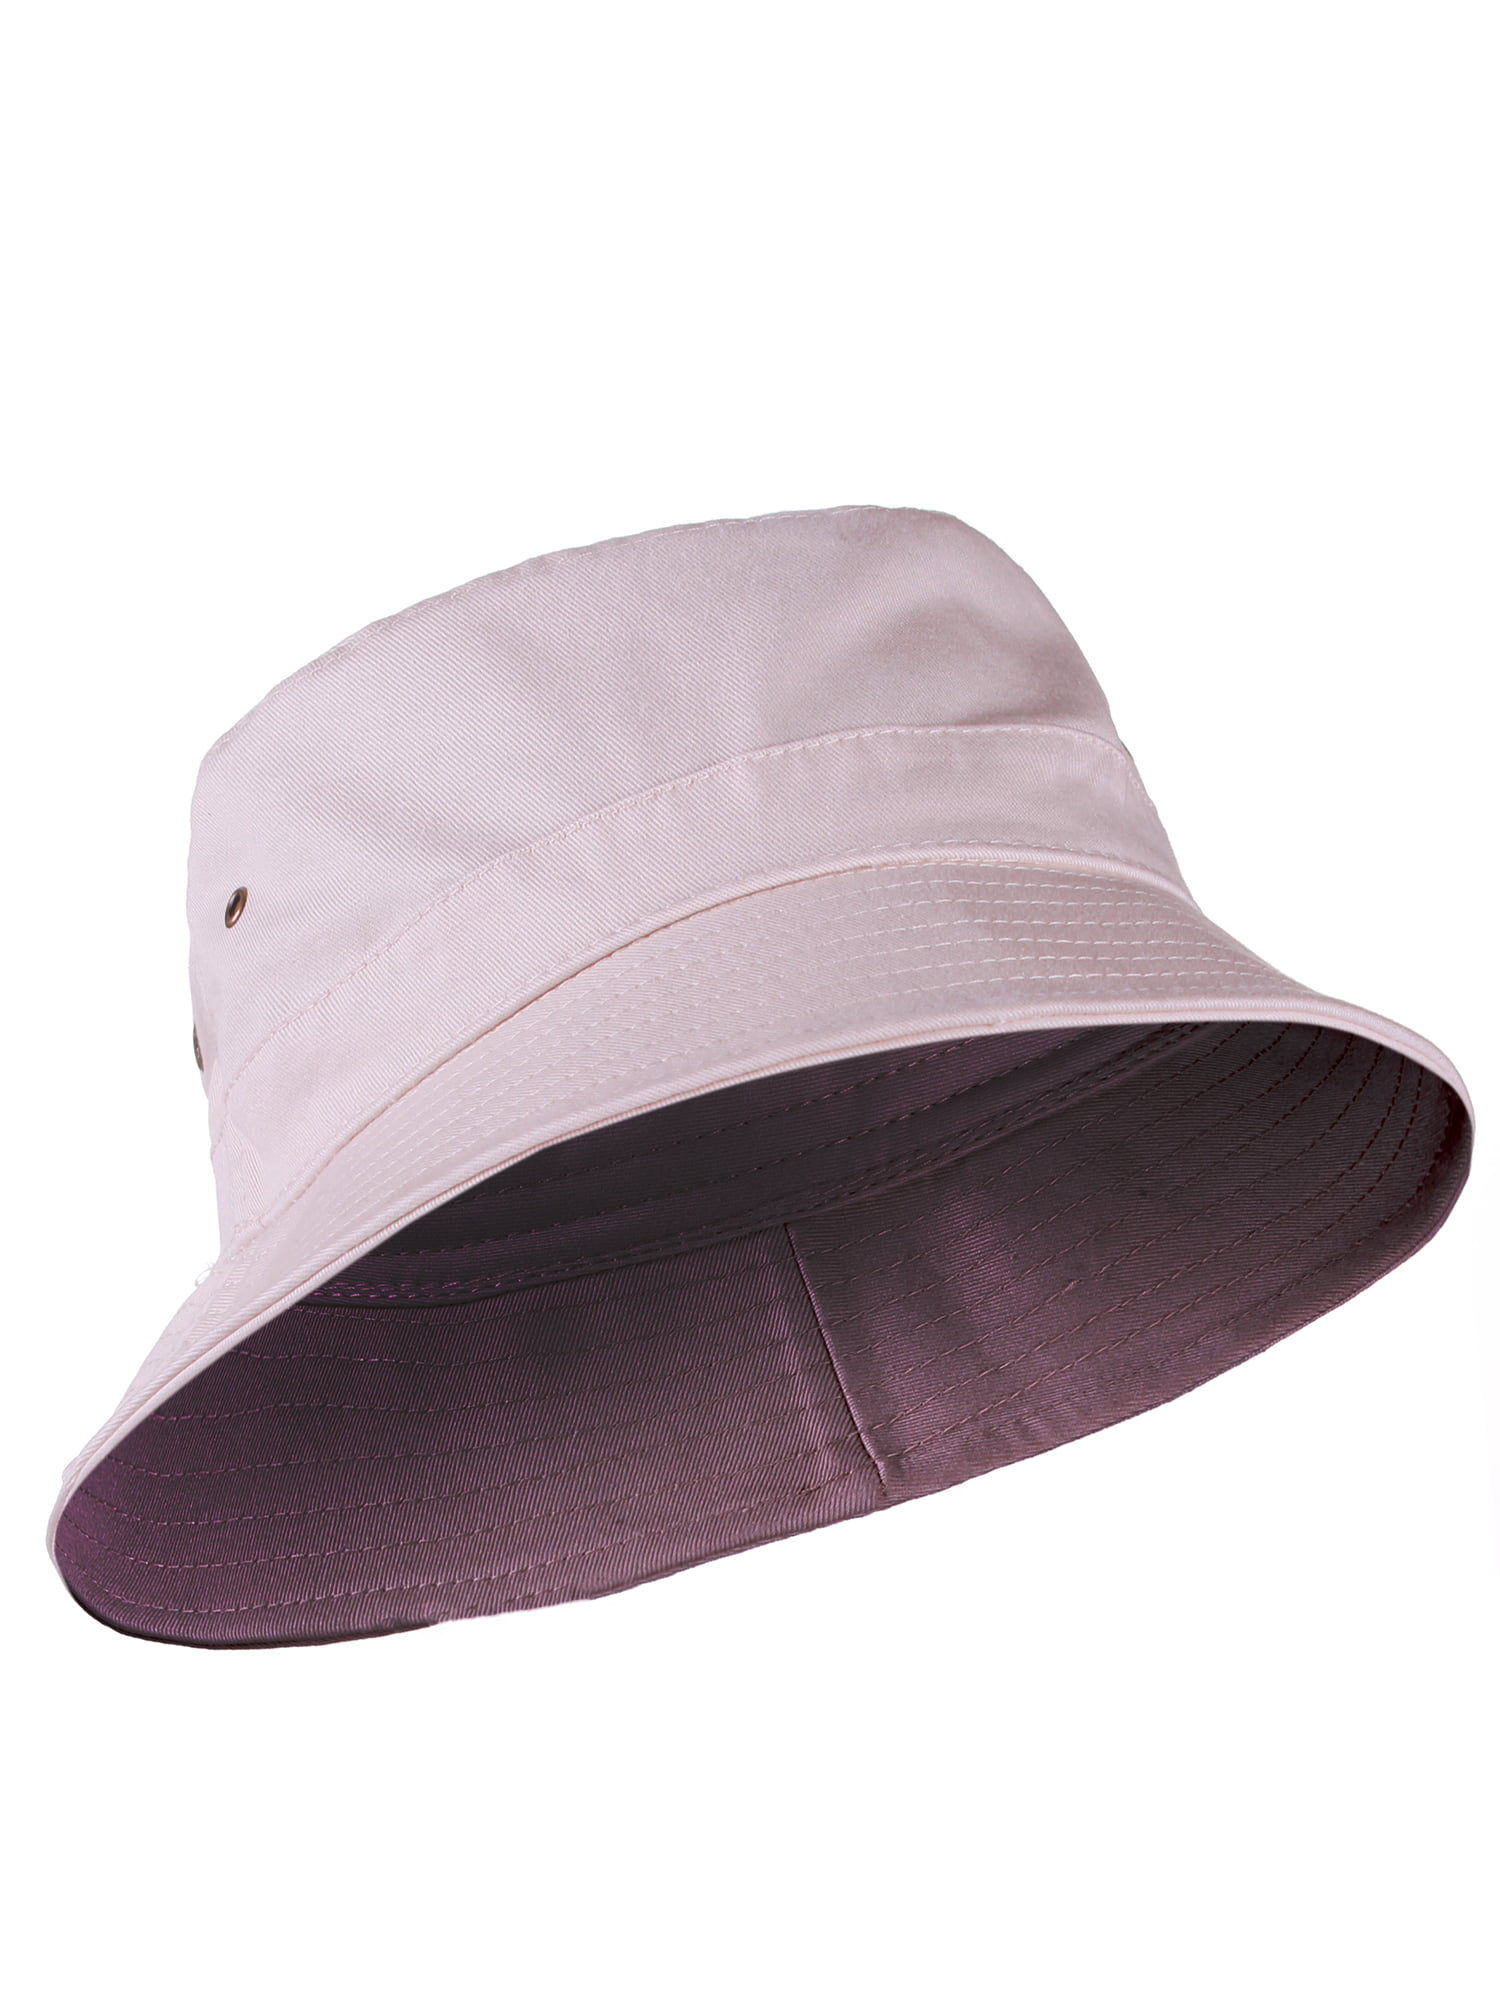 Zeltauto Kids Cotton Bucket Hat Reversible Sun Summer Cap 